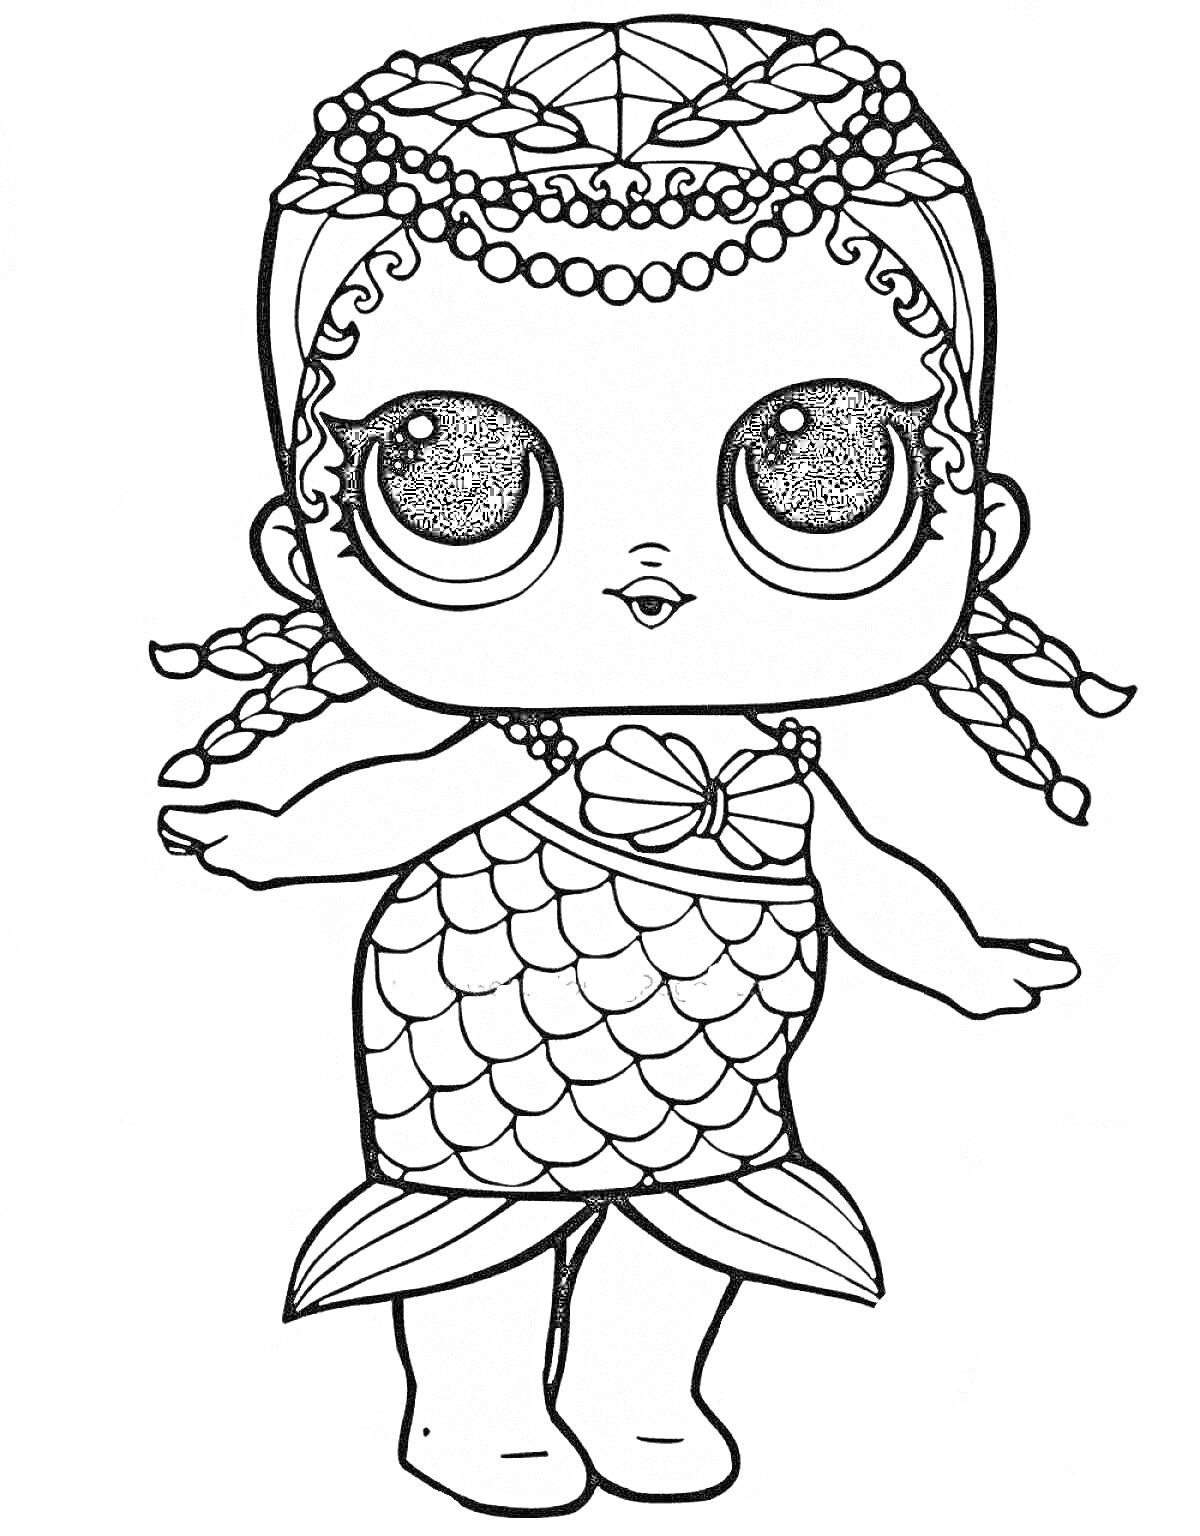 Раскраска Кукла Лол в костюме русалки с украшениями на голове